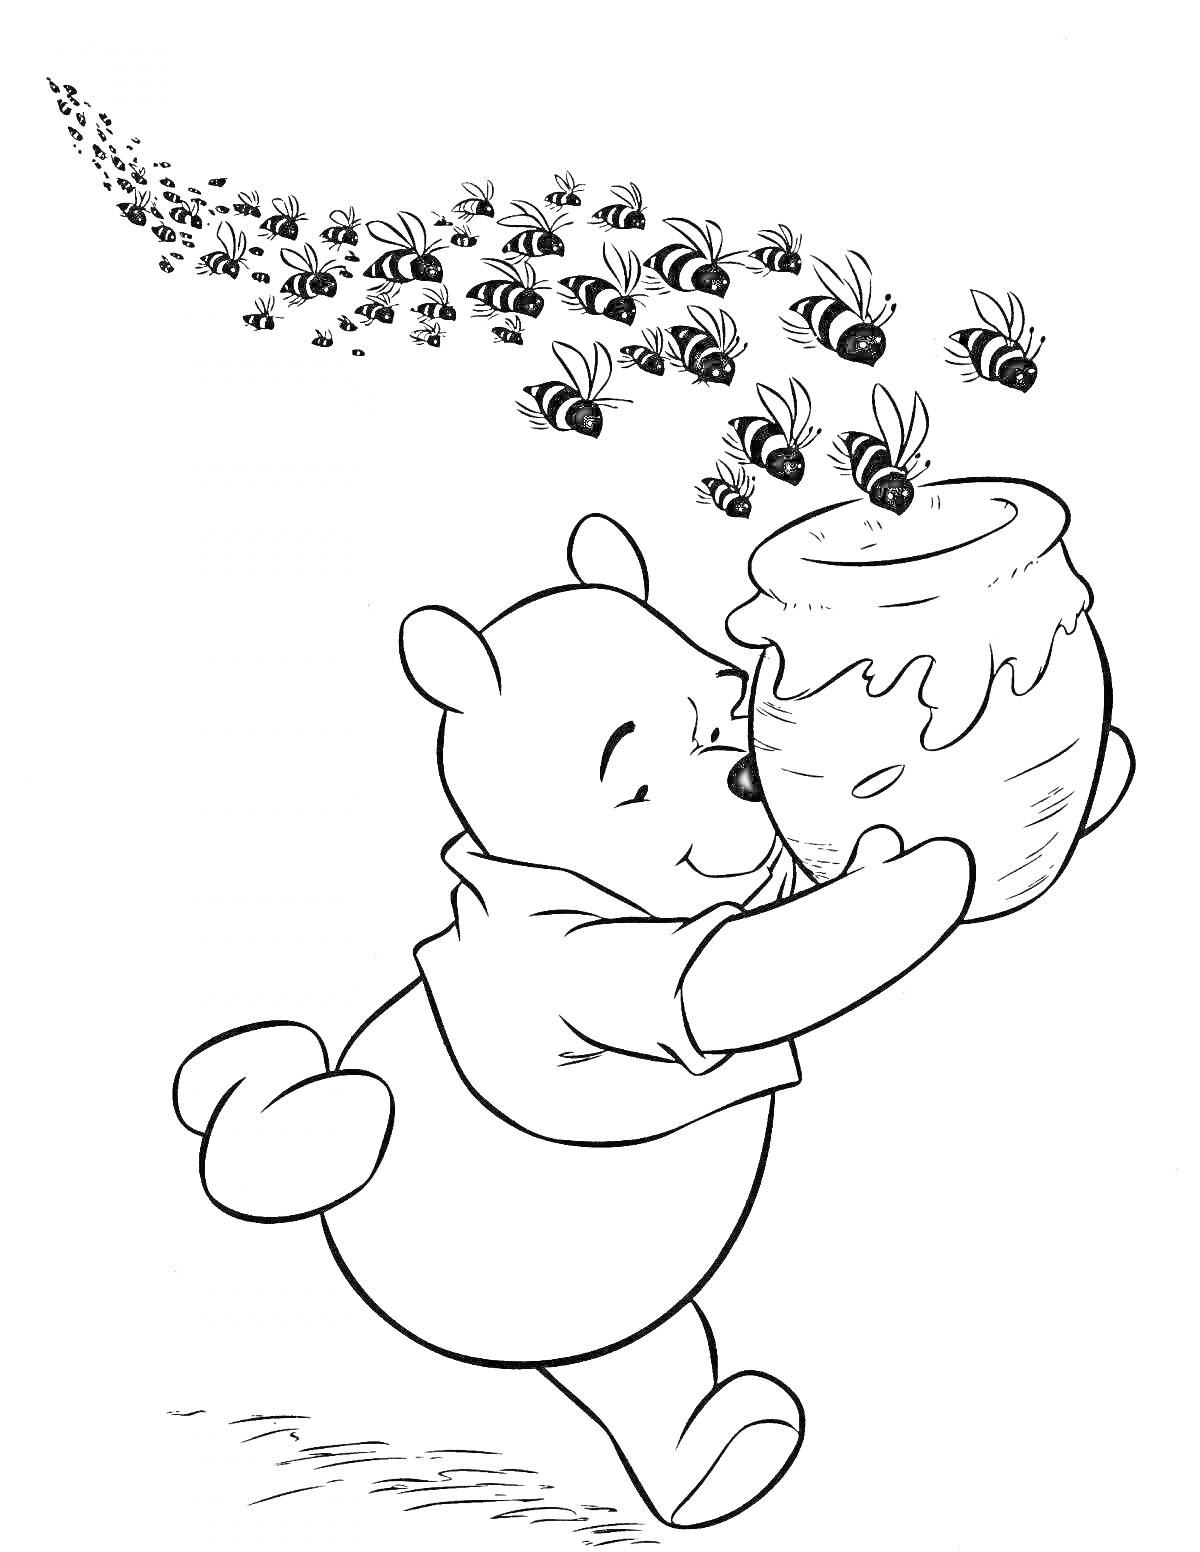 Раскраска Винни-Пух с горшком меда и роем пчел